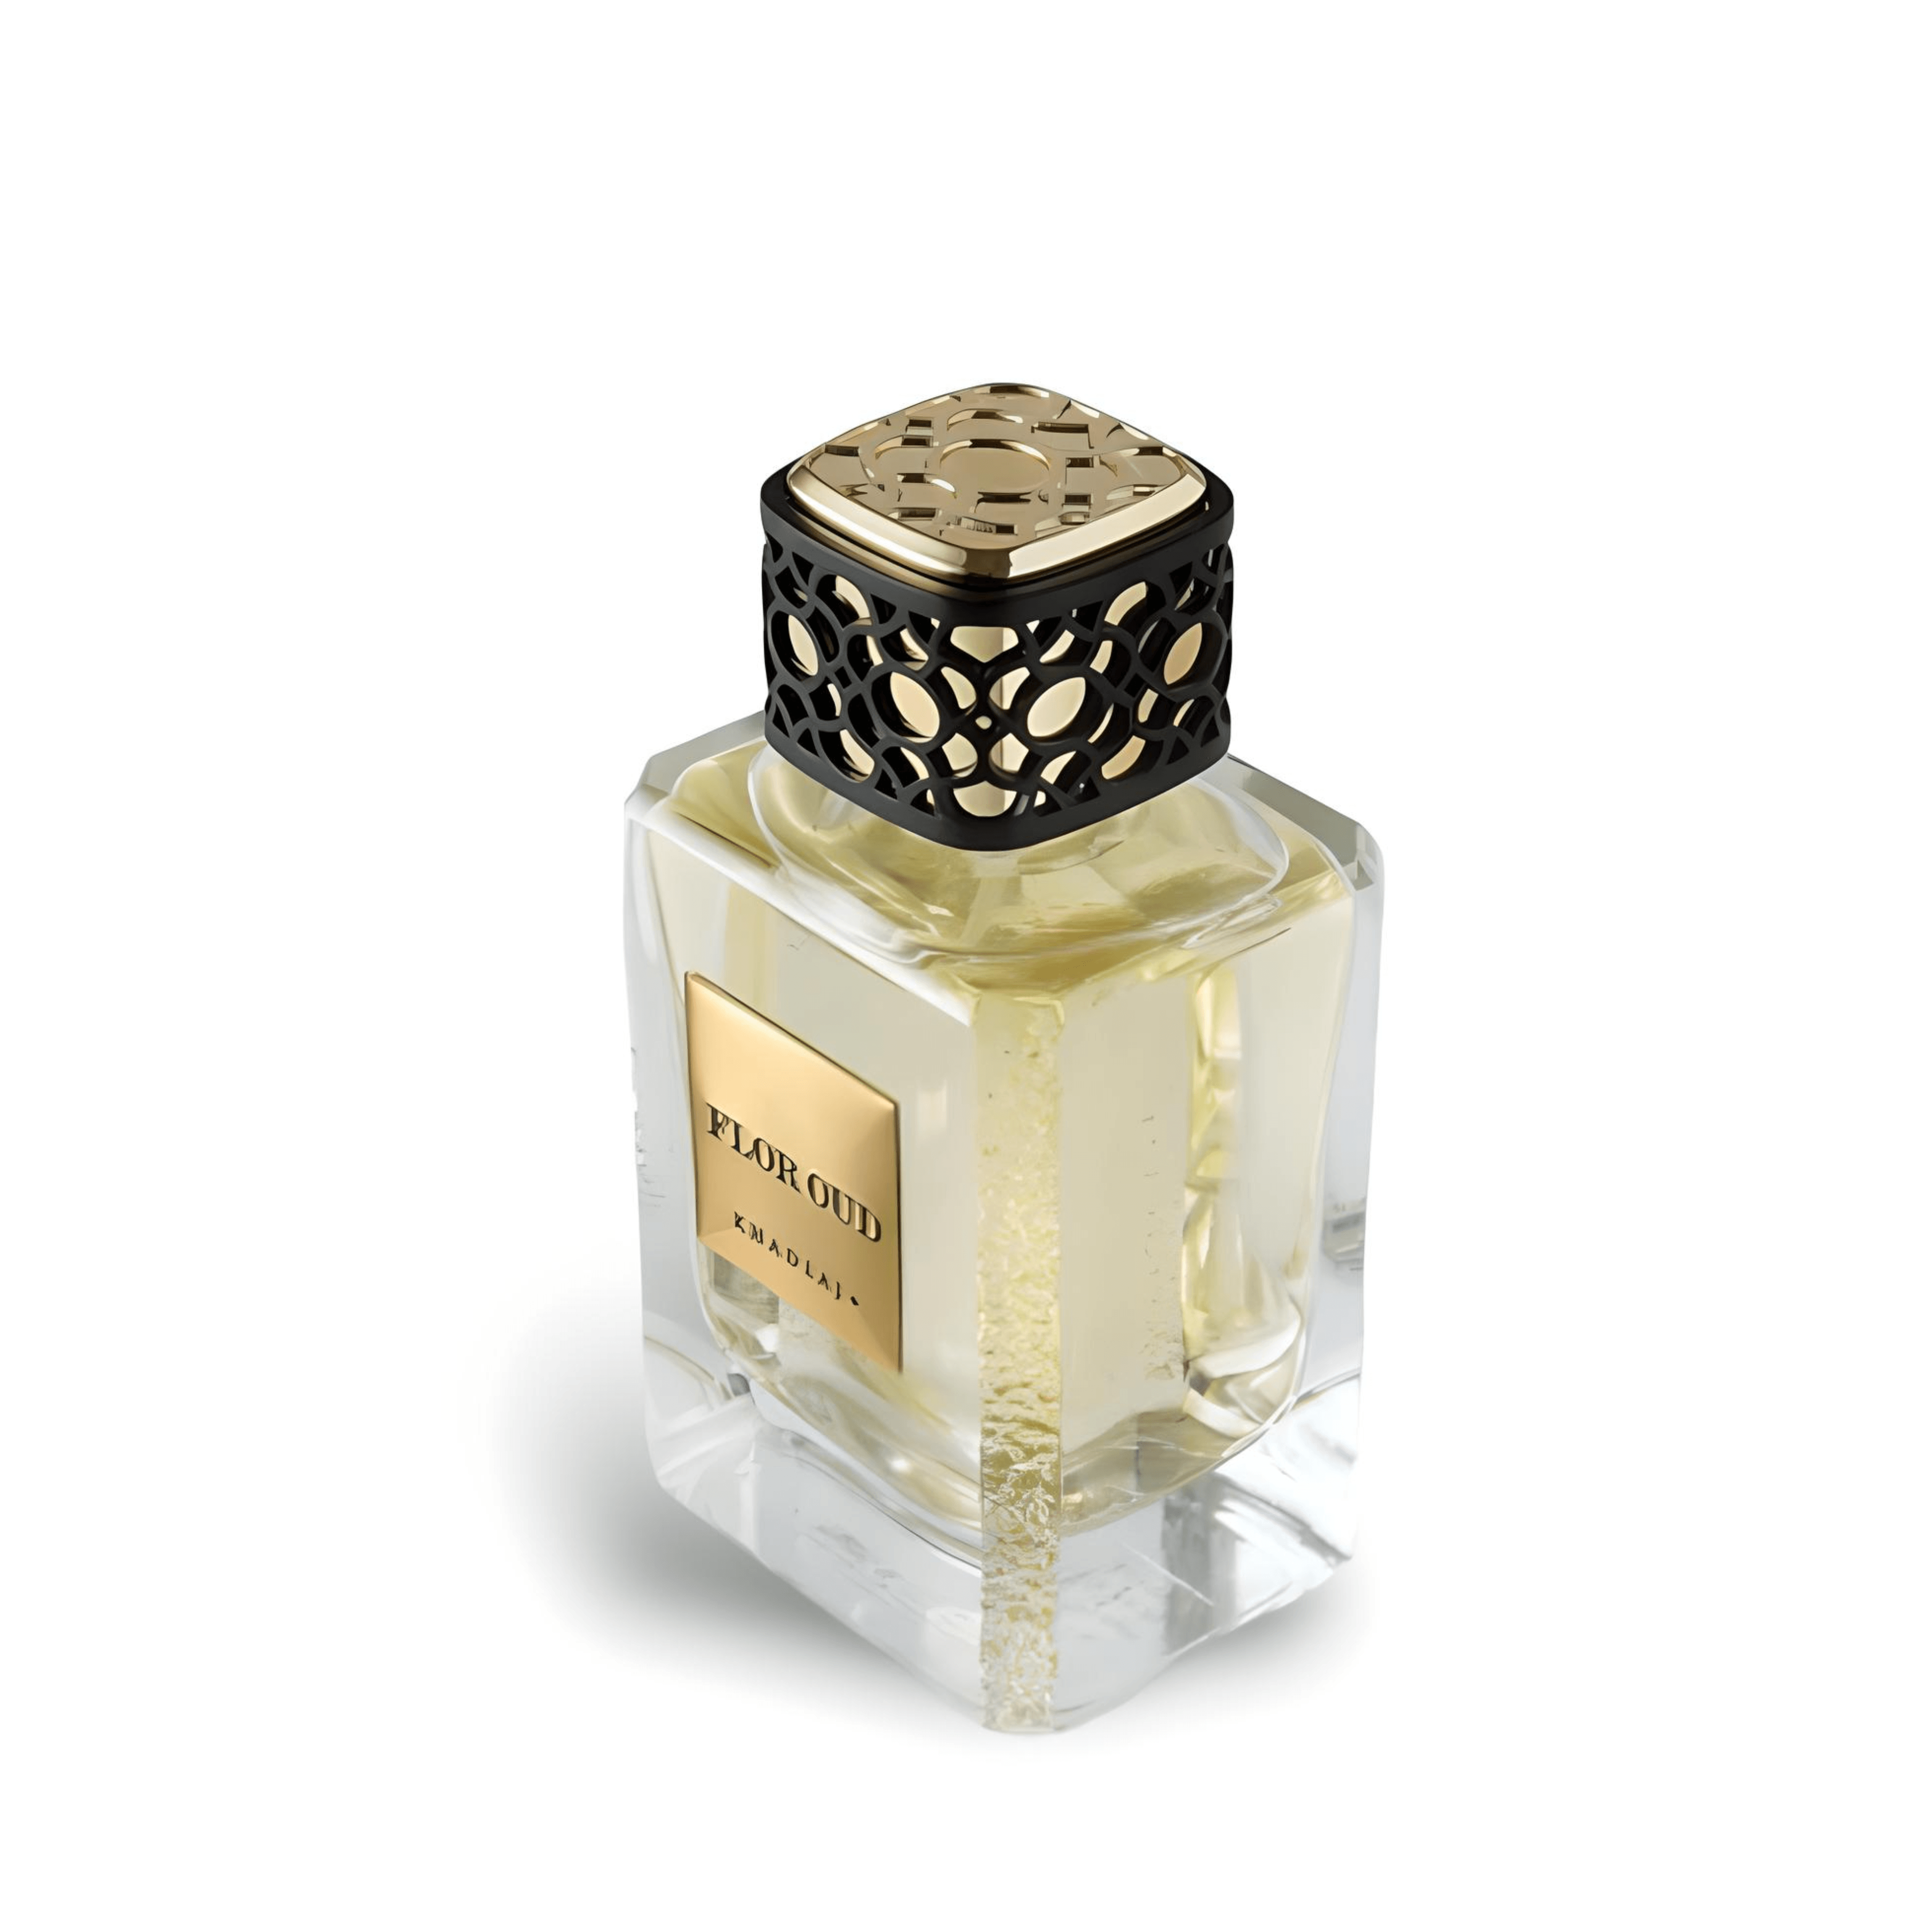 Maison Flor Oud Perfume / Eau De Parfum 100Ml By Khadlaj - A Floral Oud Symphony